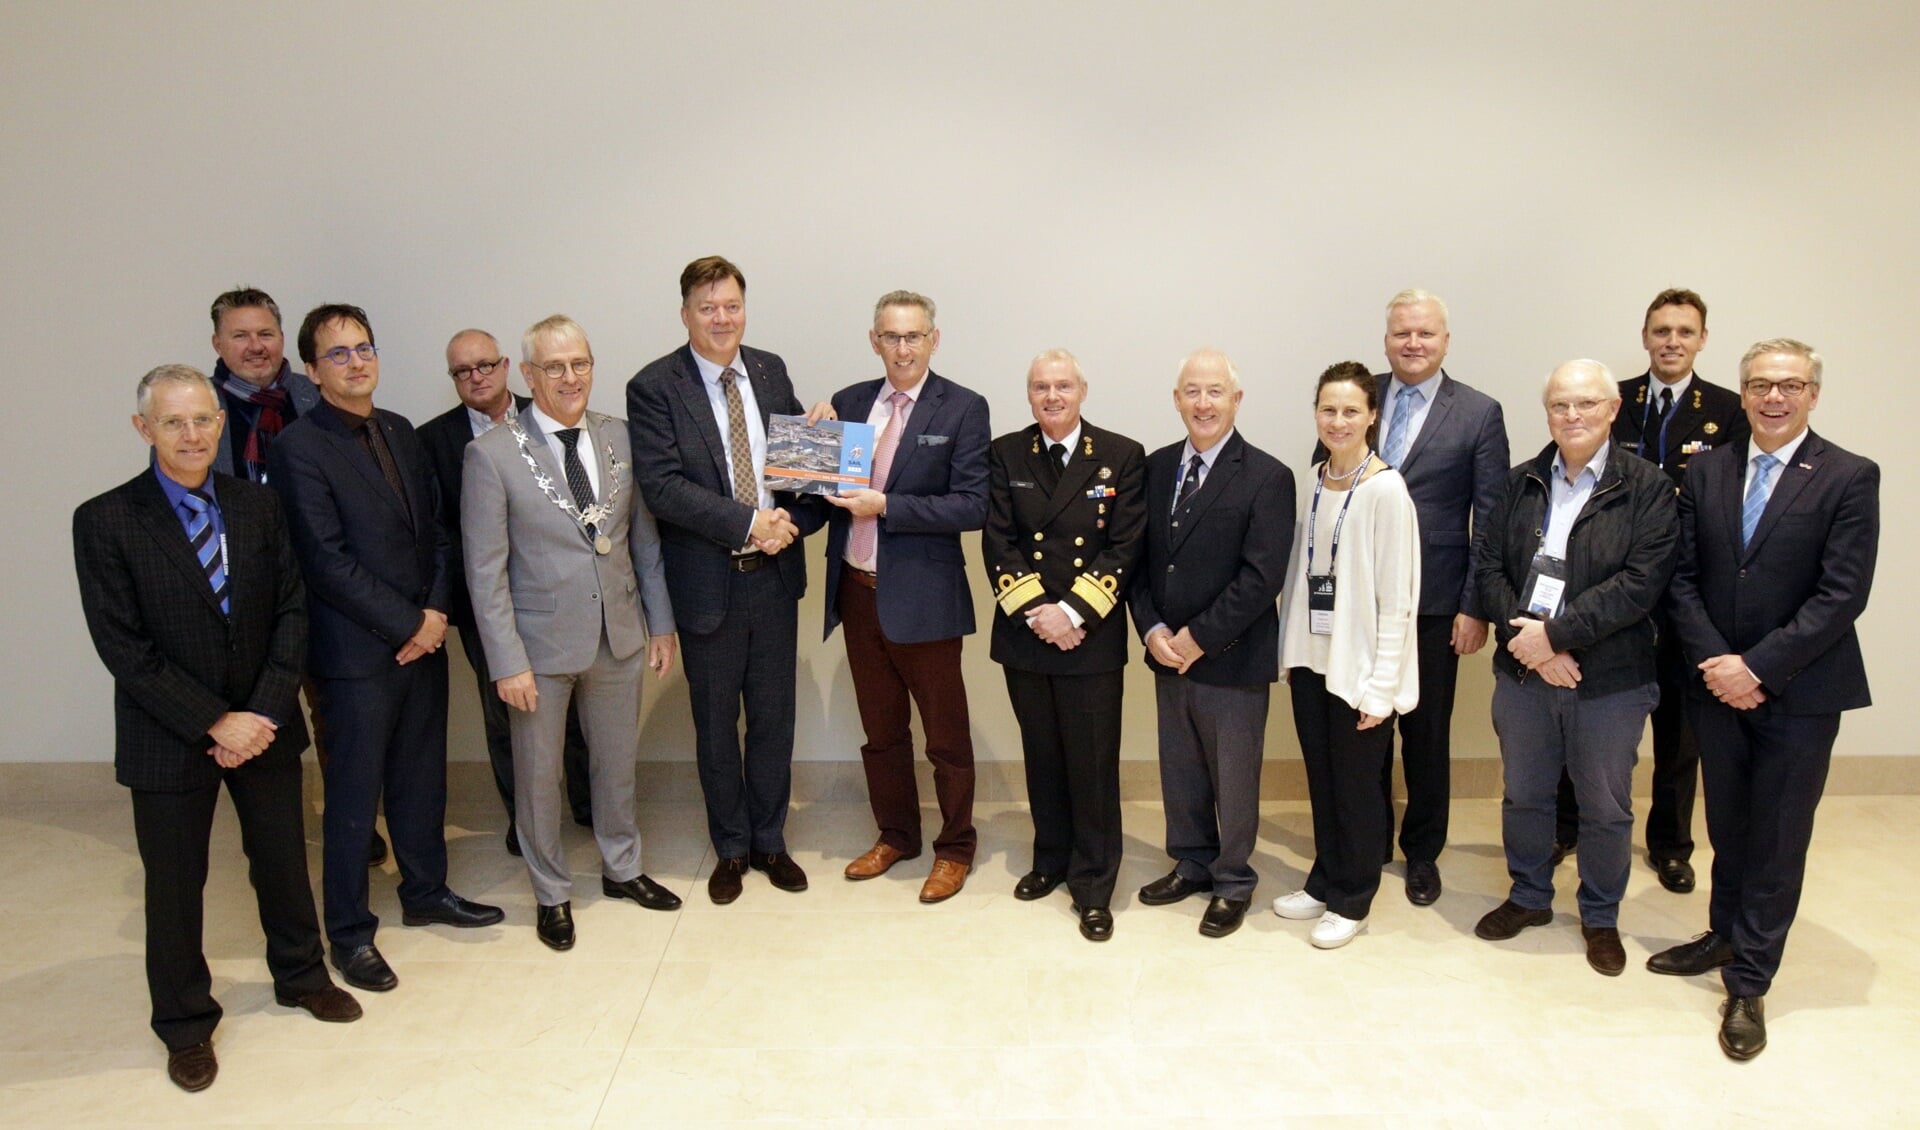 Officiële overhandiging bidbook Sail Den Helder d.d. 6 december 2019 in Antwerpen.